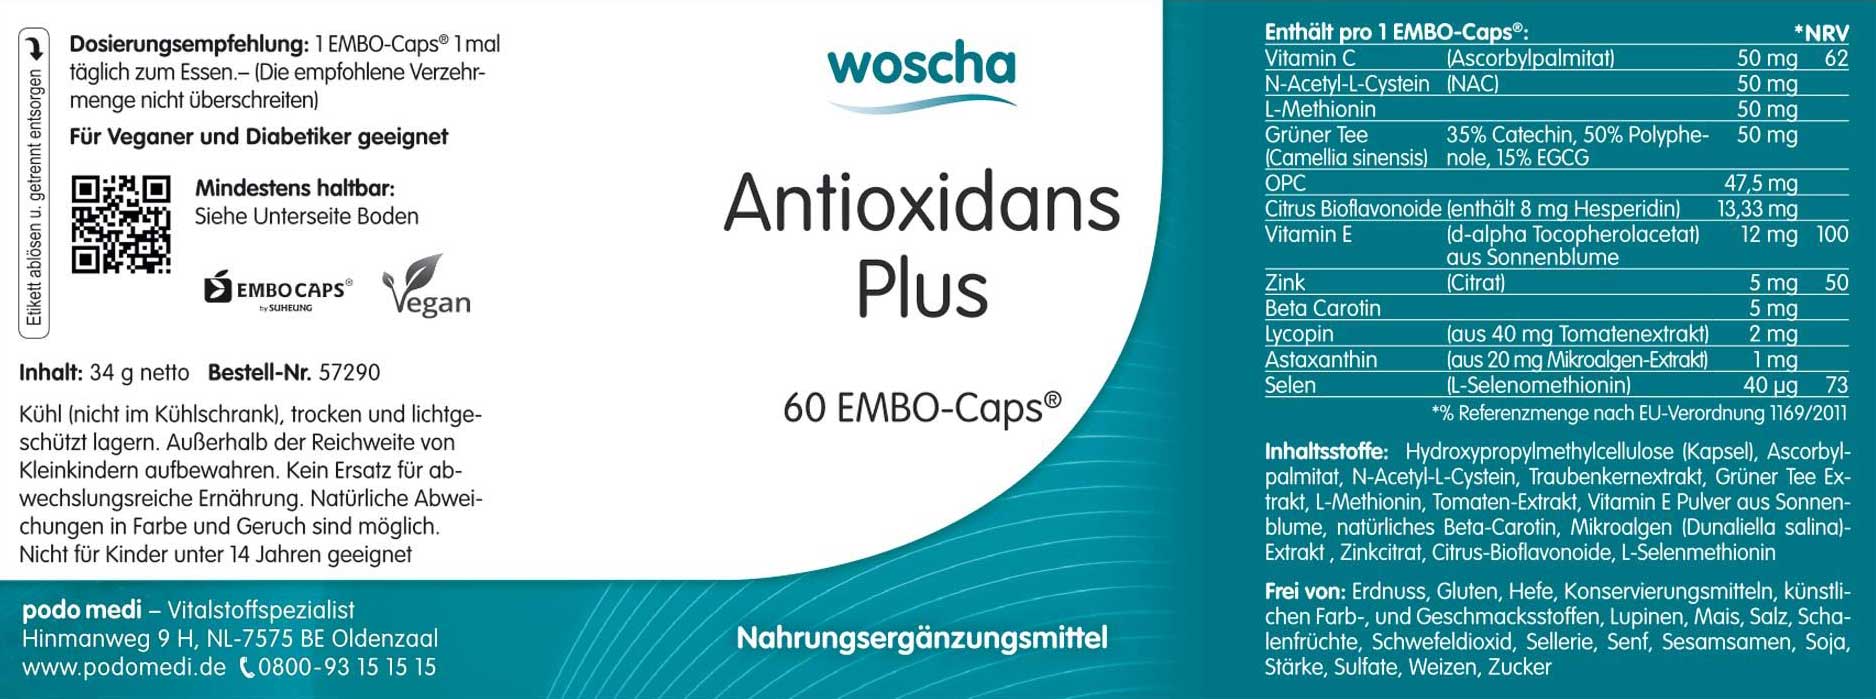 Woscha Antioxidans plus von podo medi beinhaltet 60 Kapseln Etikett